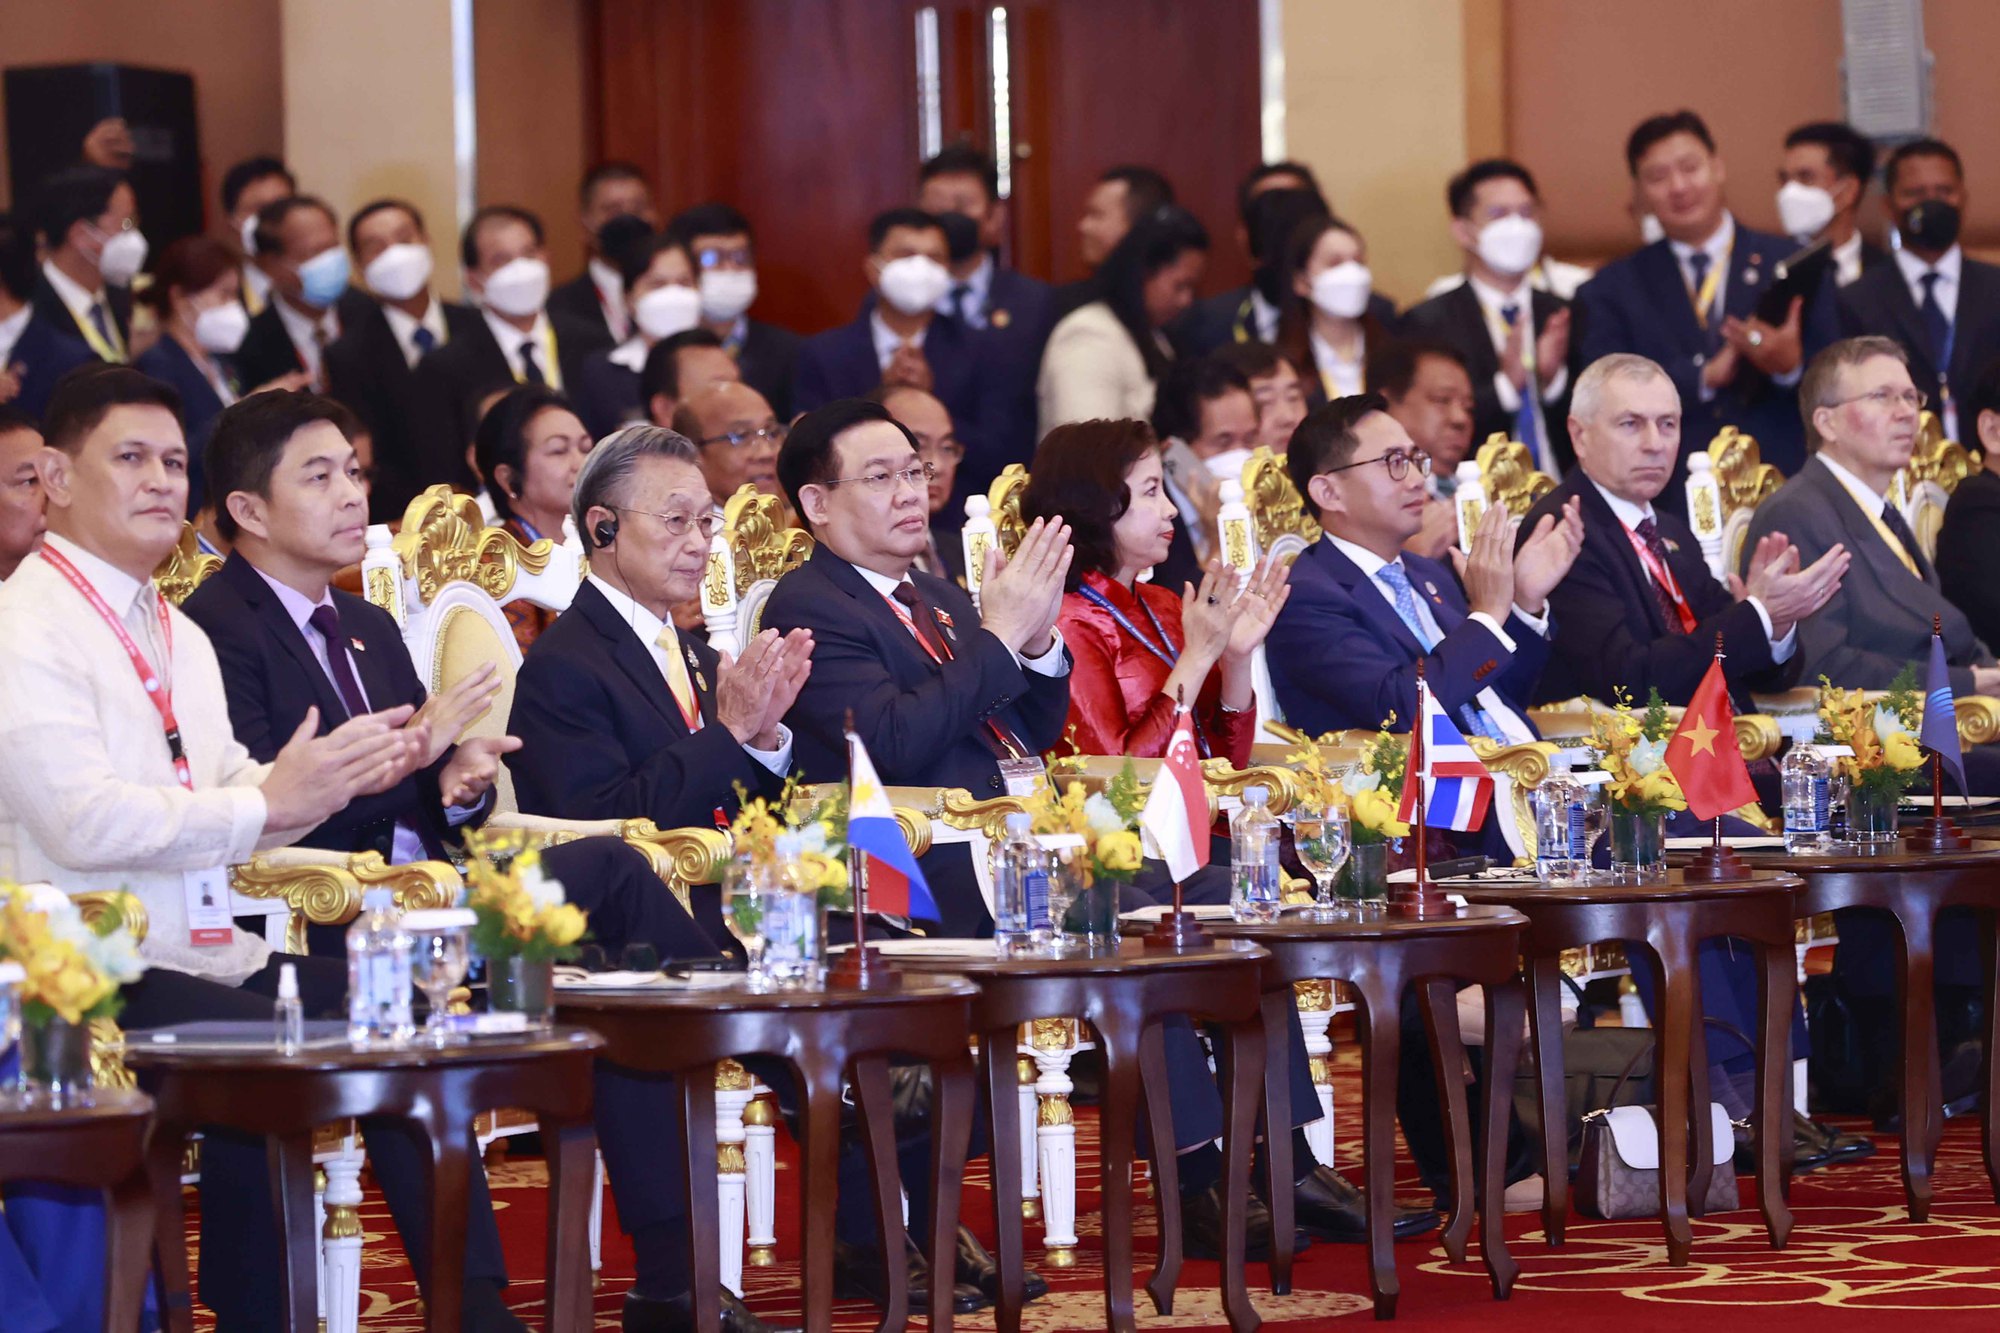 Khai mạc Đại hội đồng liên nghị viện các quốc gia Đông Nam Á lần thứ 43 - Ảnh 5.